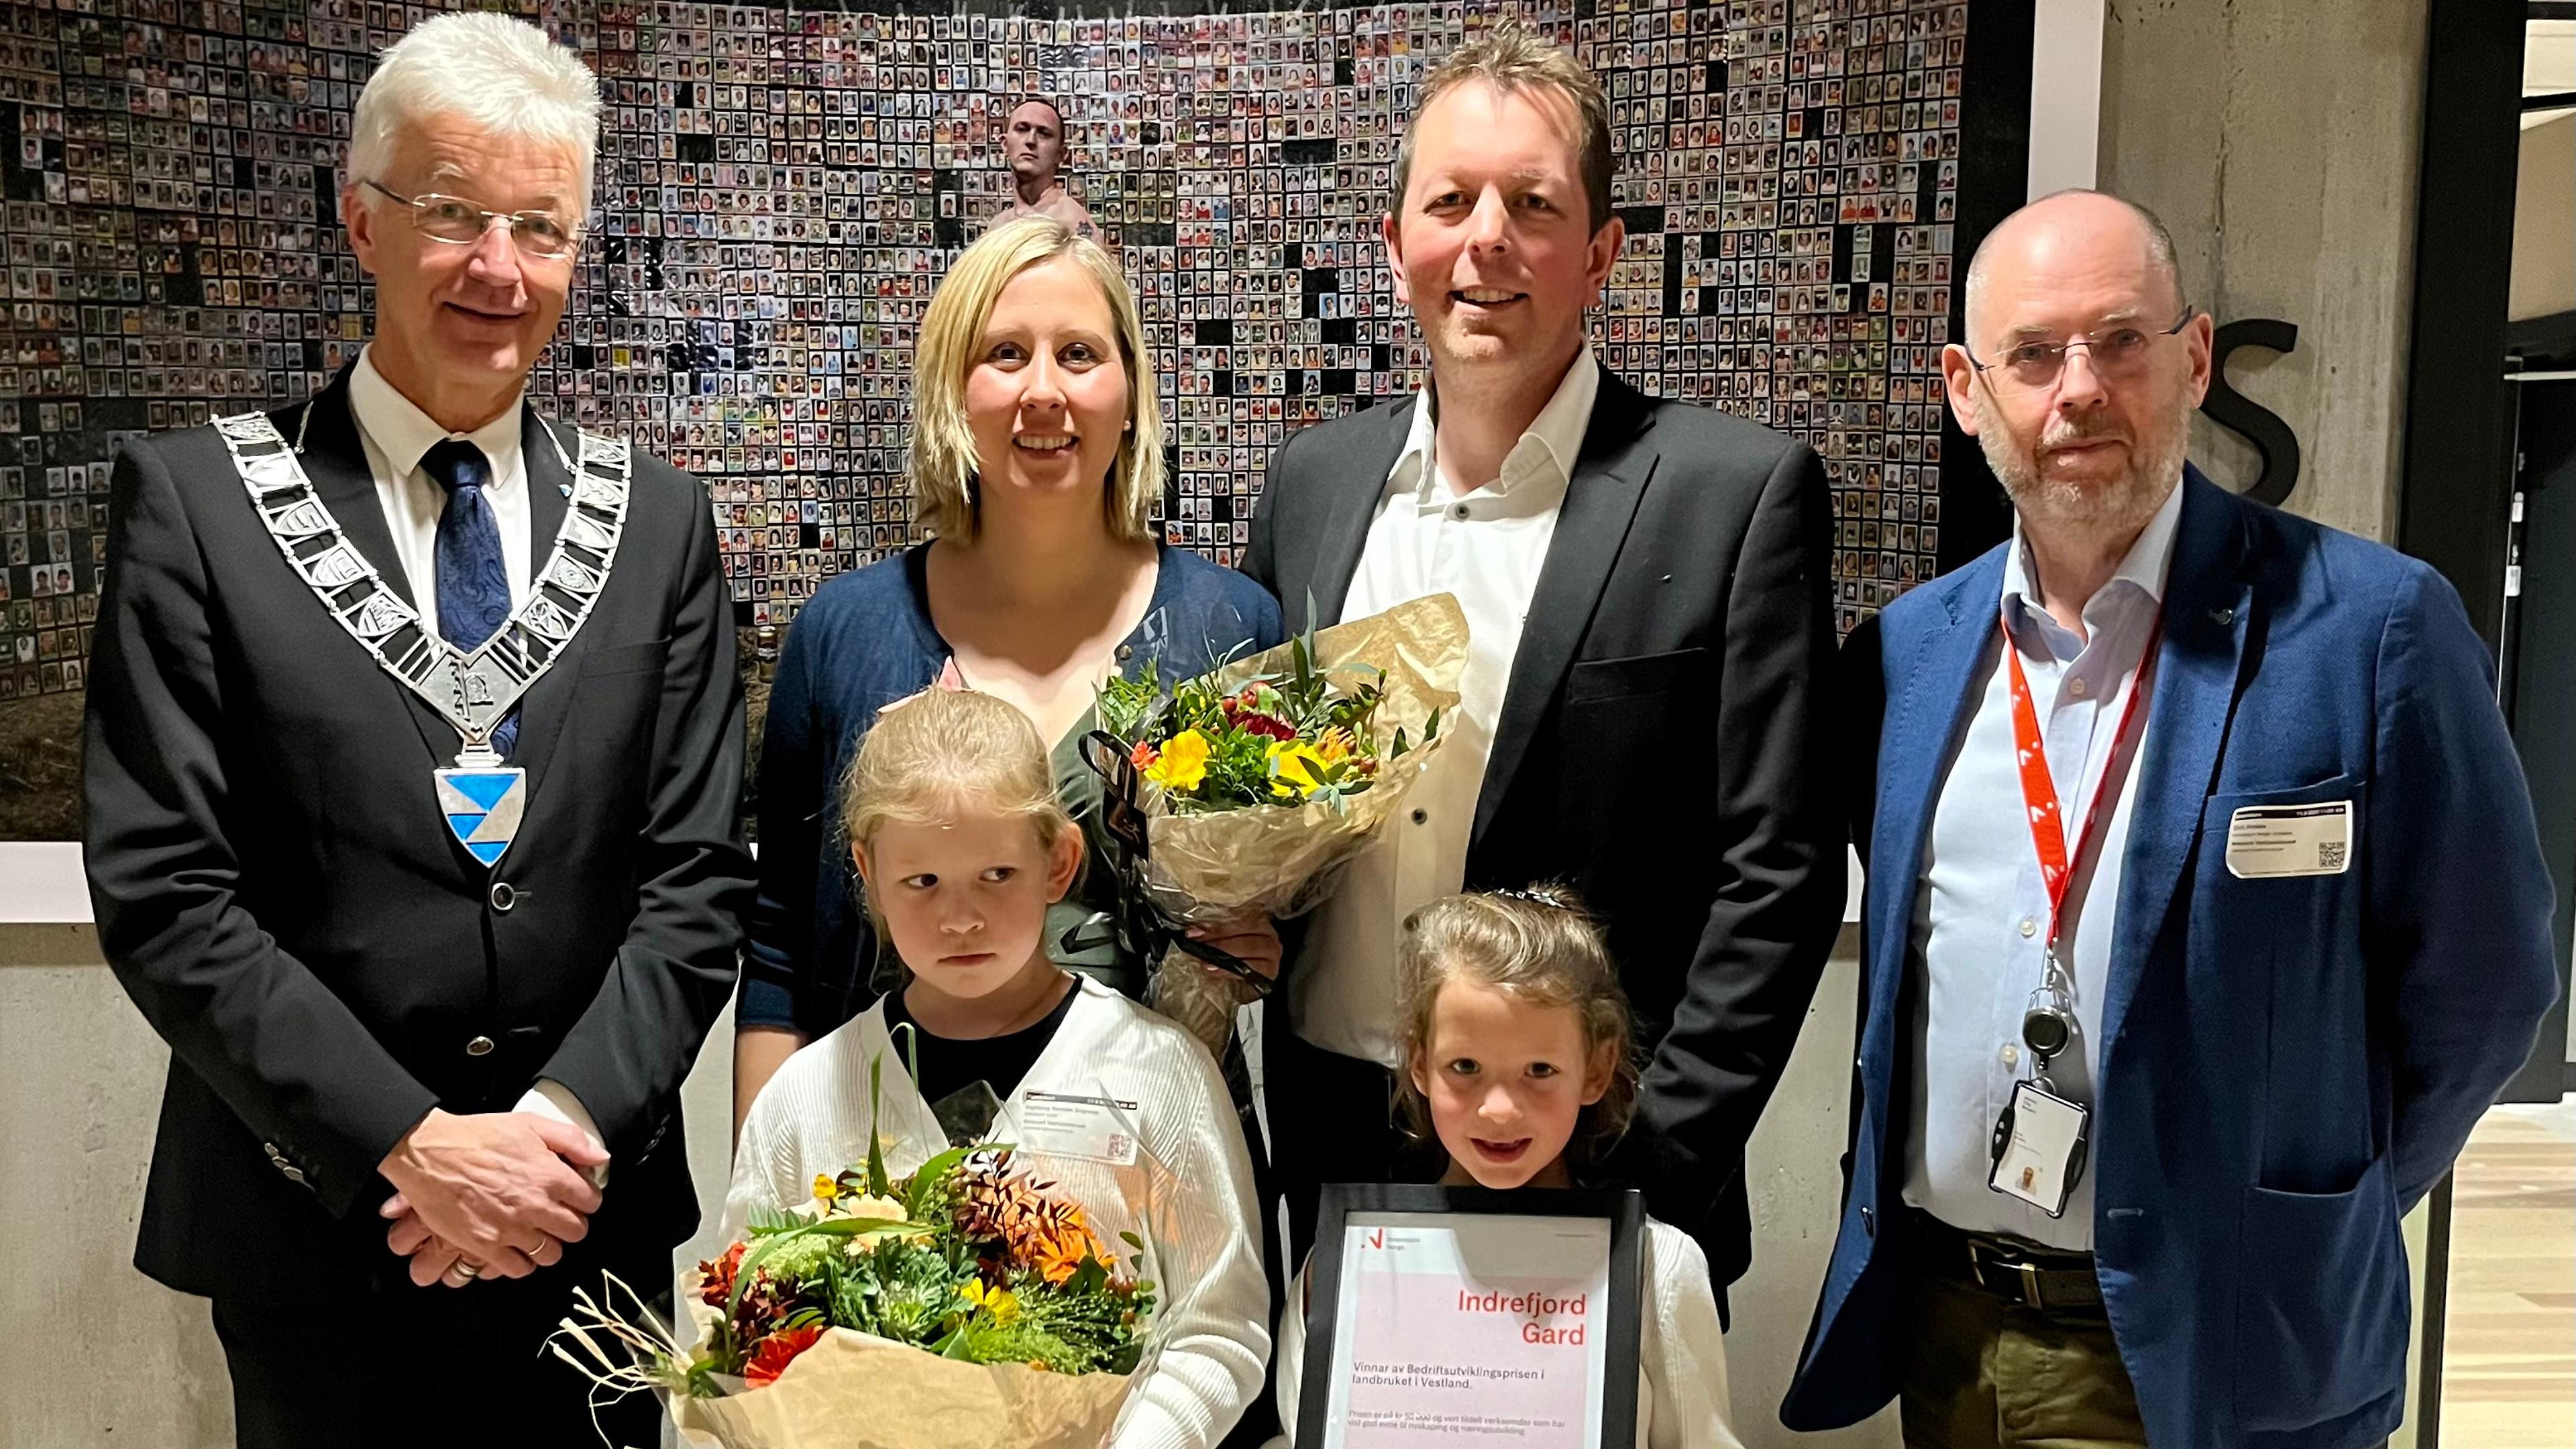 Prisvinnerne og deres to barn står med blomster og diplom ved siden av fylkesordføreren